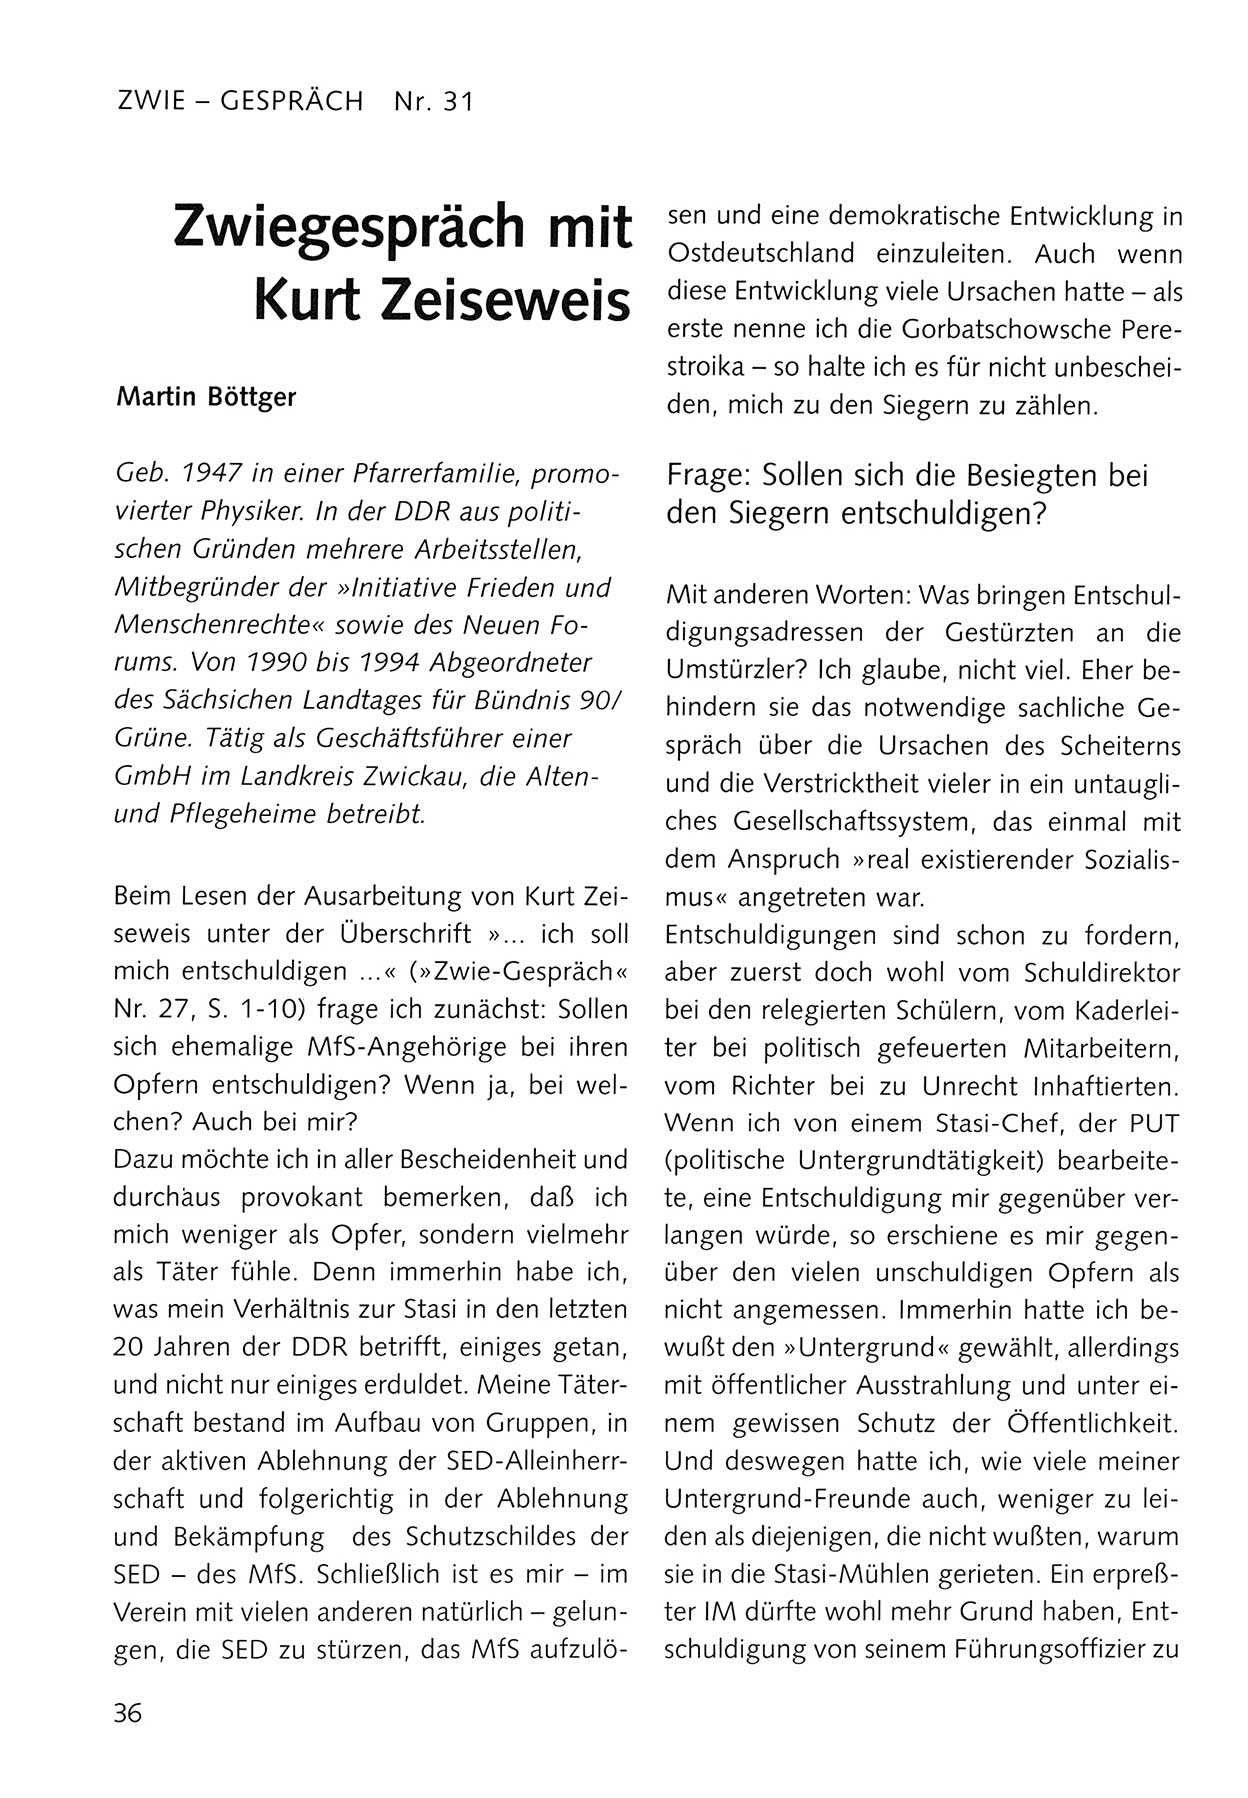 Zwie-Gespräch, Beiträge zum Umgang mit der Staatssicherheits-Vergangenheit [Deutsche Demokratische Republik (DDR)], Ausgabe Nr. 31, Berlin 1995, Seite 36 (Zwie-Gespr. Ausg. 31 1995, S. 36)